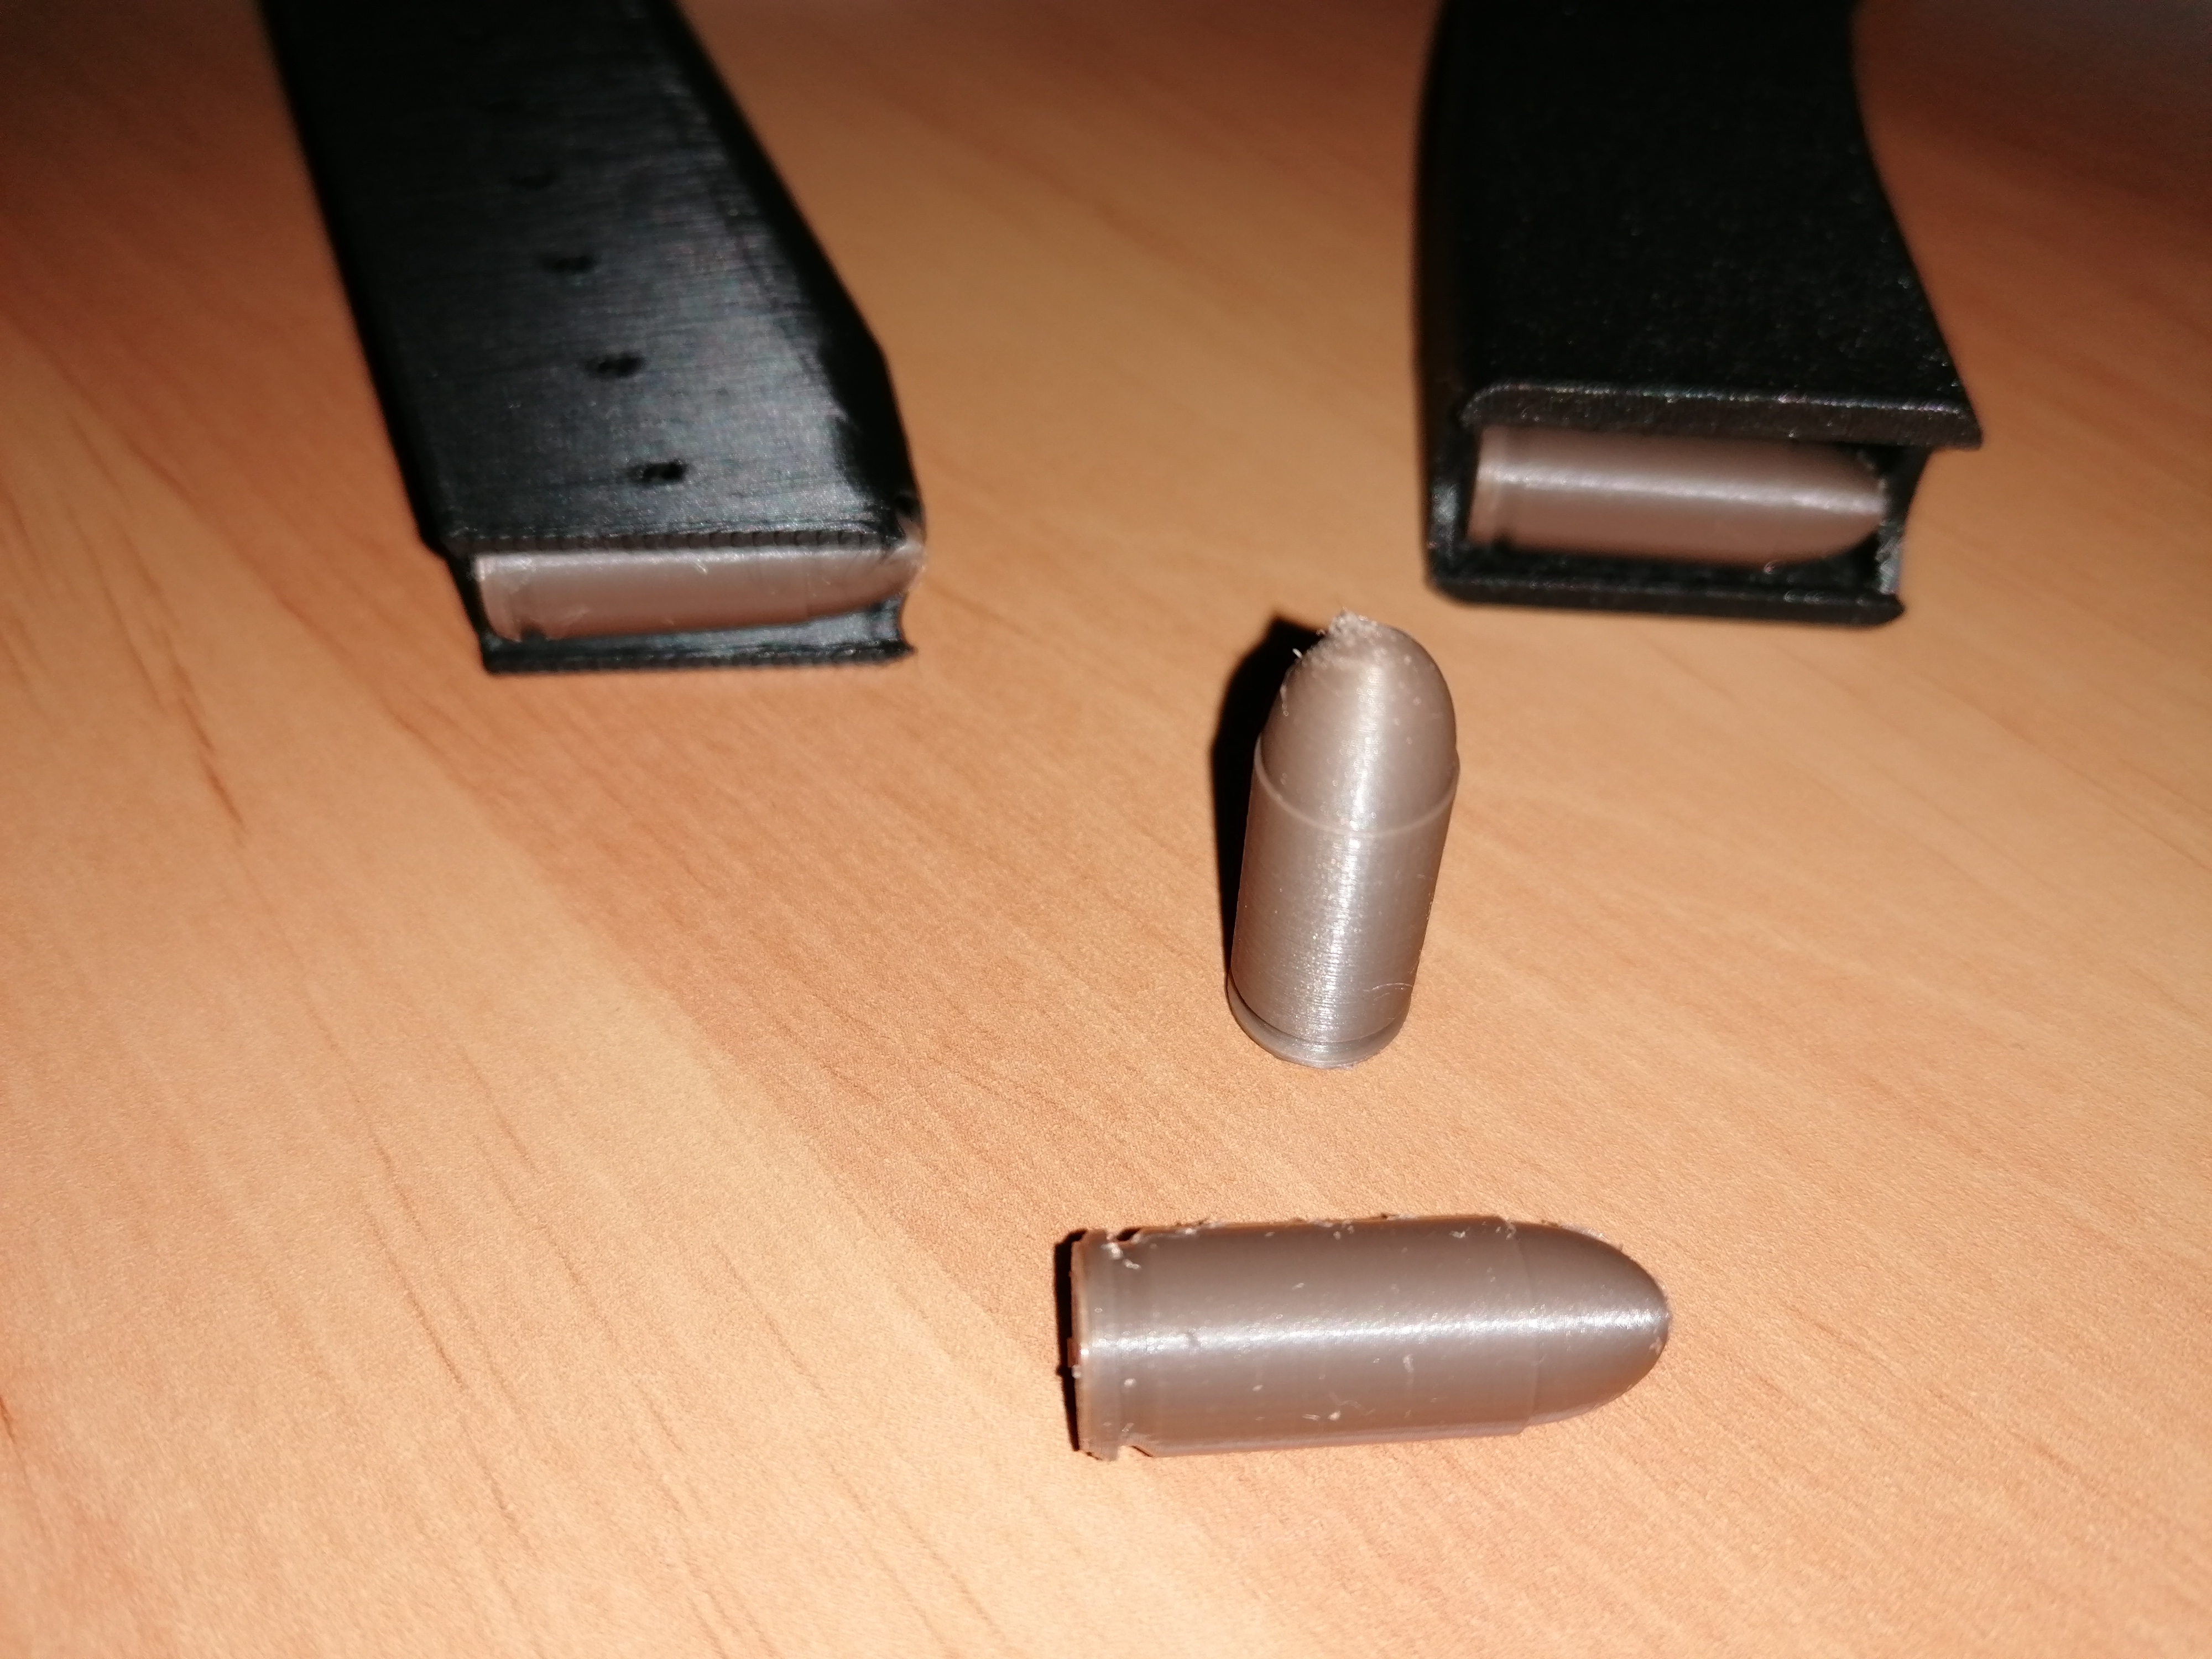 9mm Parabellum bullet